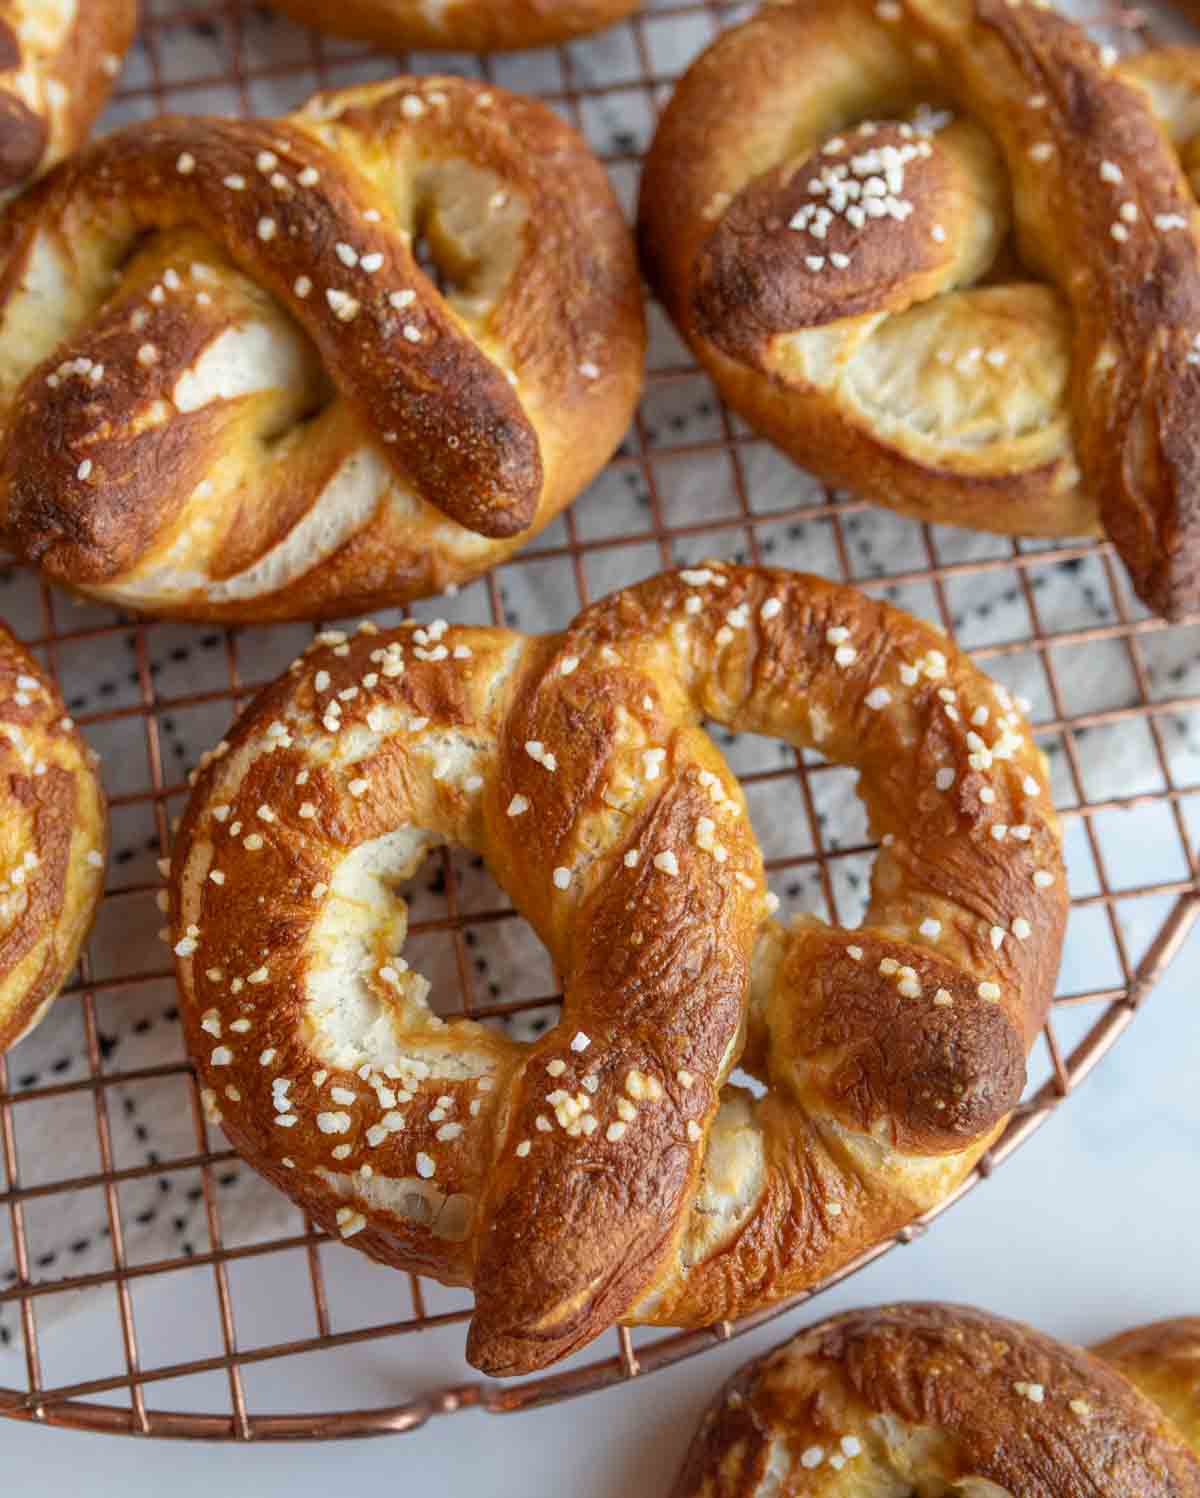 POV of freshly baked homemade pretzel.